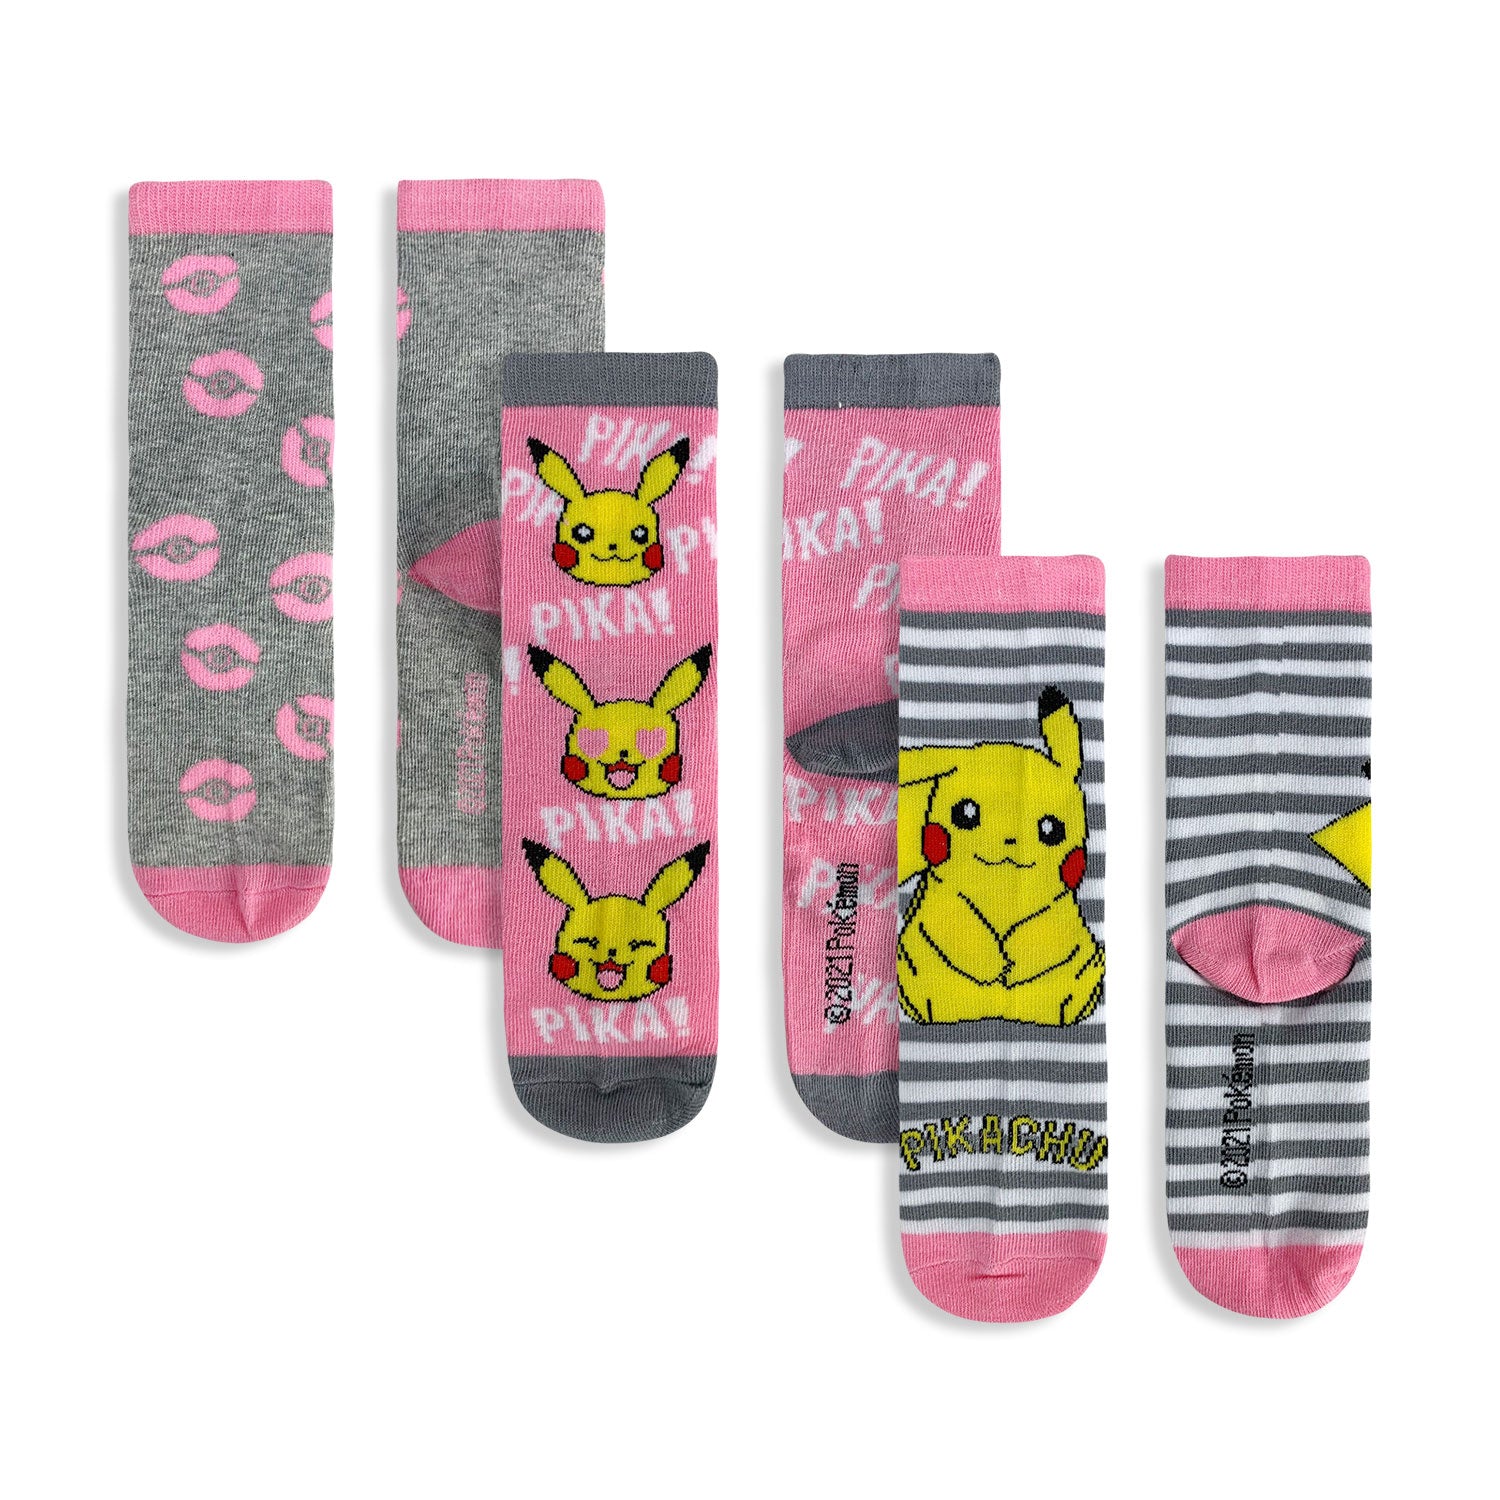 Calzini lunghi Pokemon pikachu 3 paia per bambina in filato cotone stampati 4832